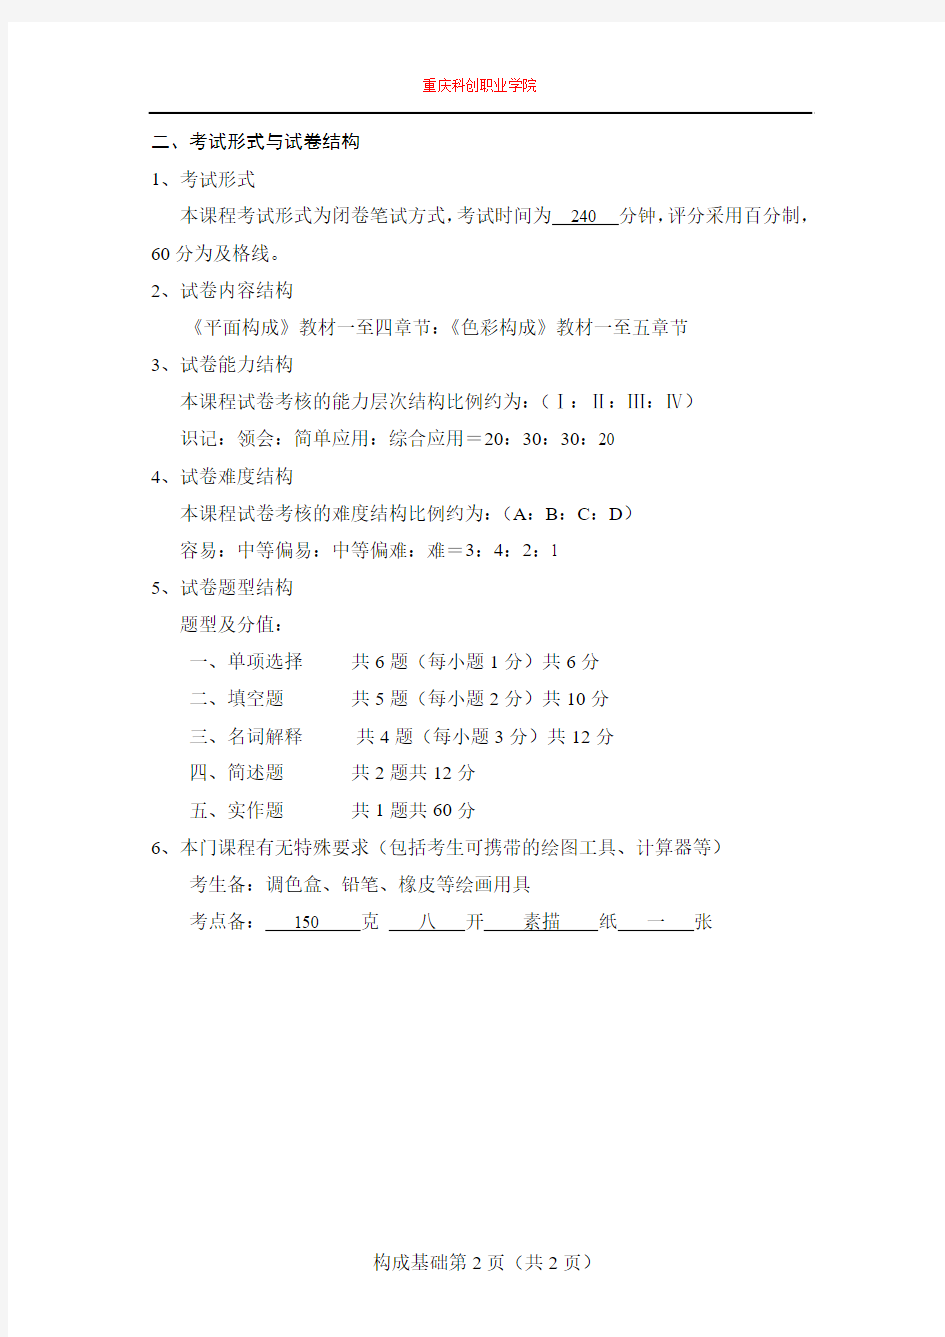 重庆科创职业学院2015年10月高等教育自学考试构成基础课程考试说明